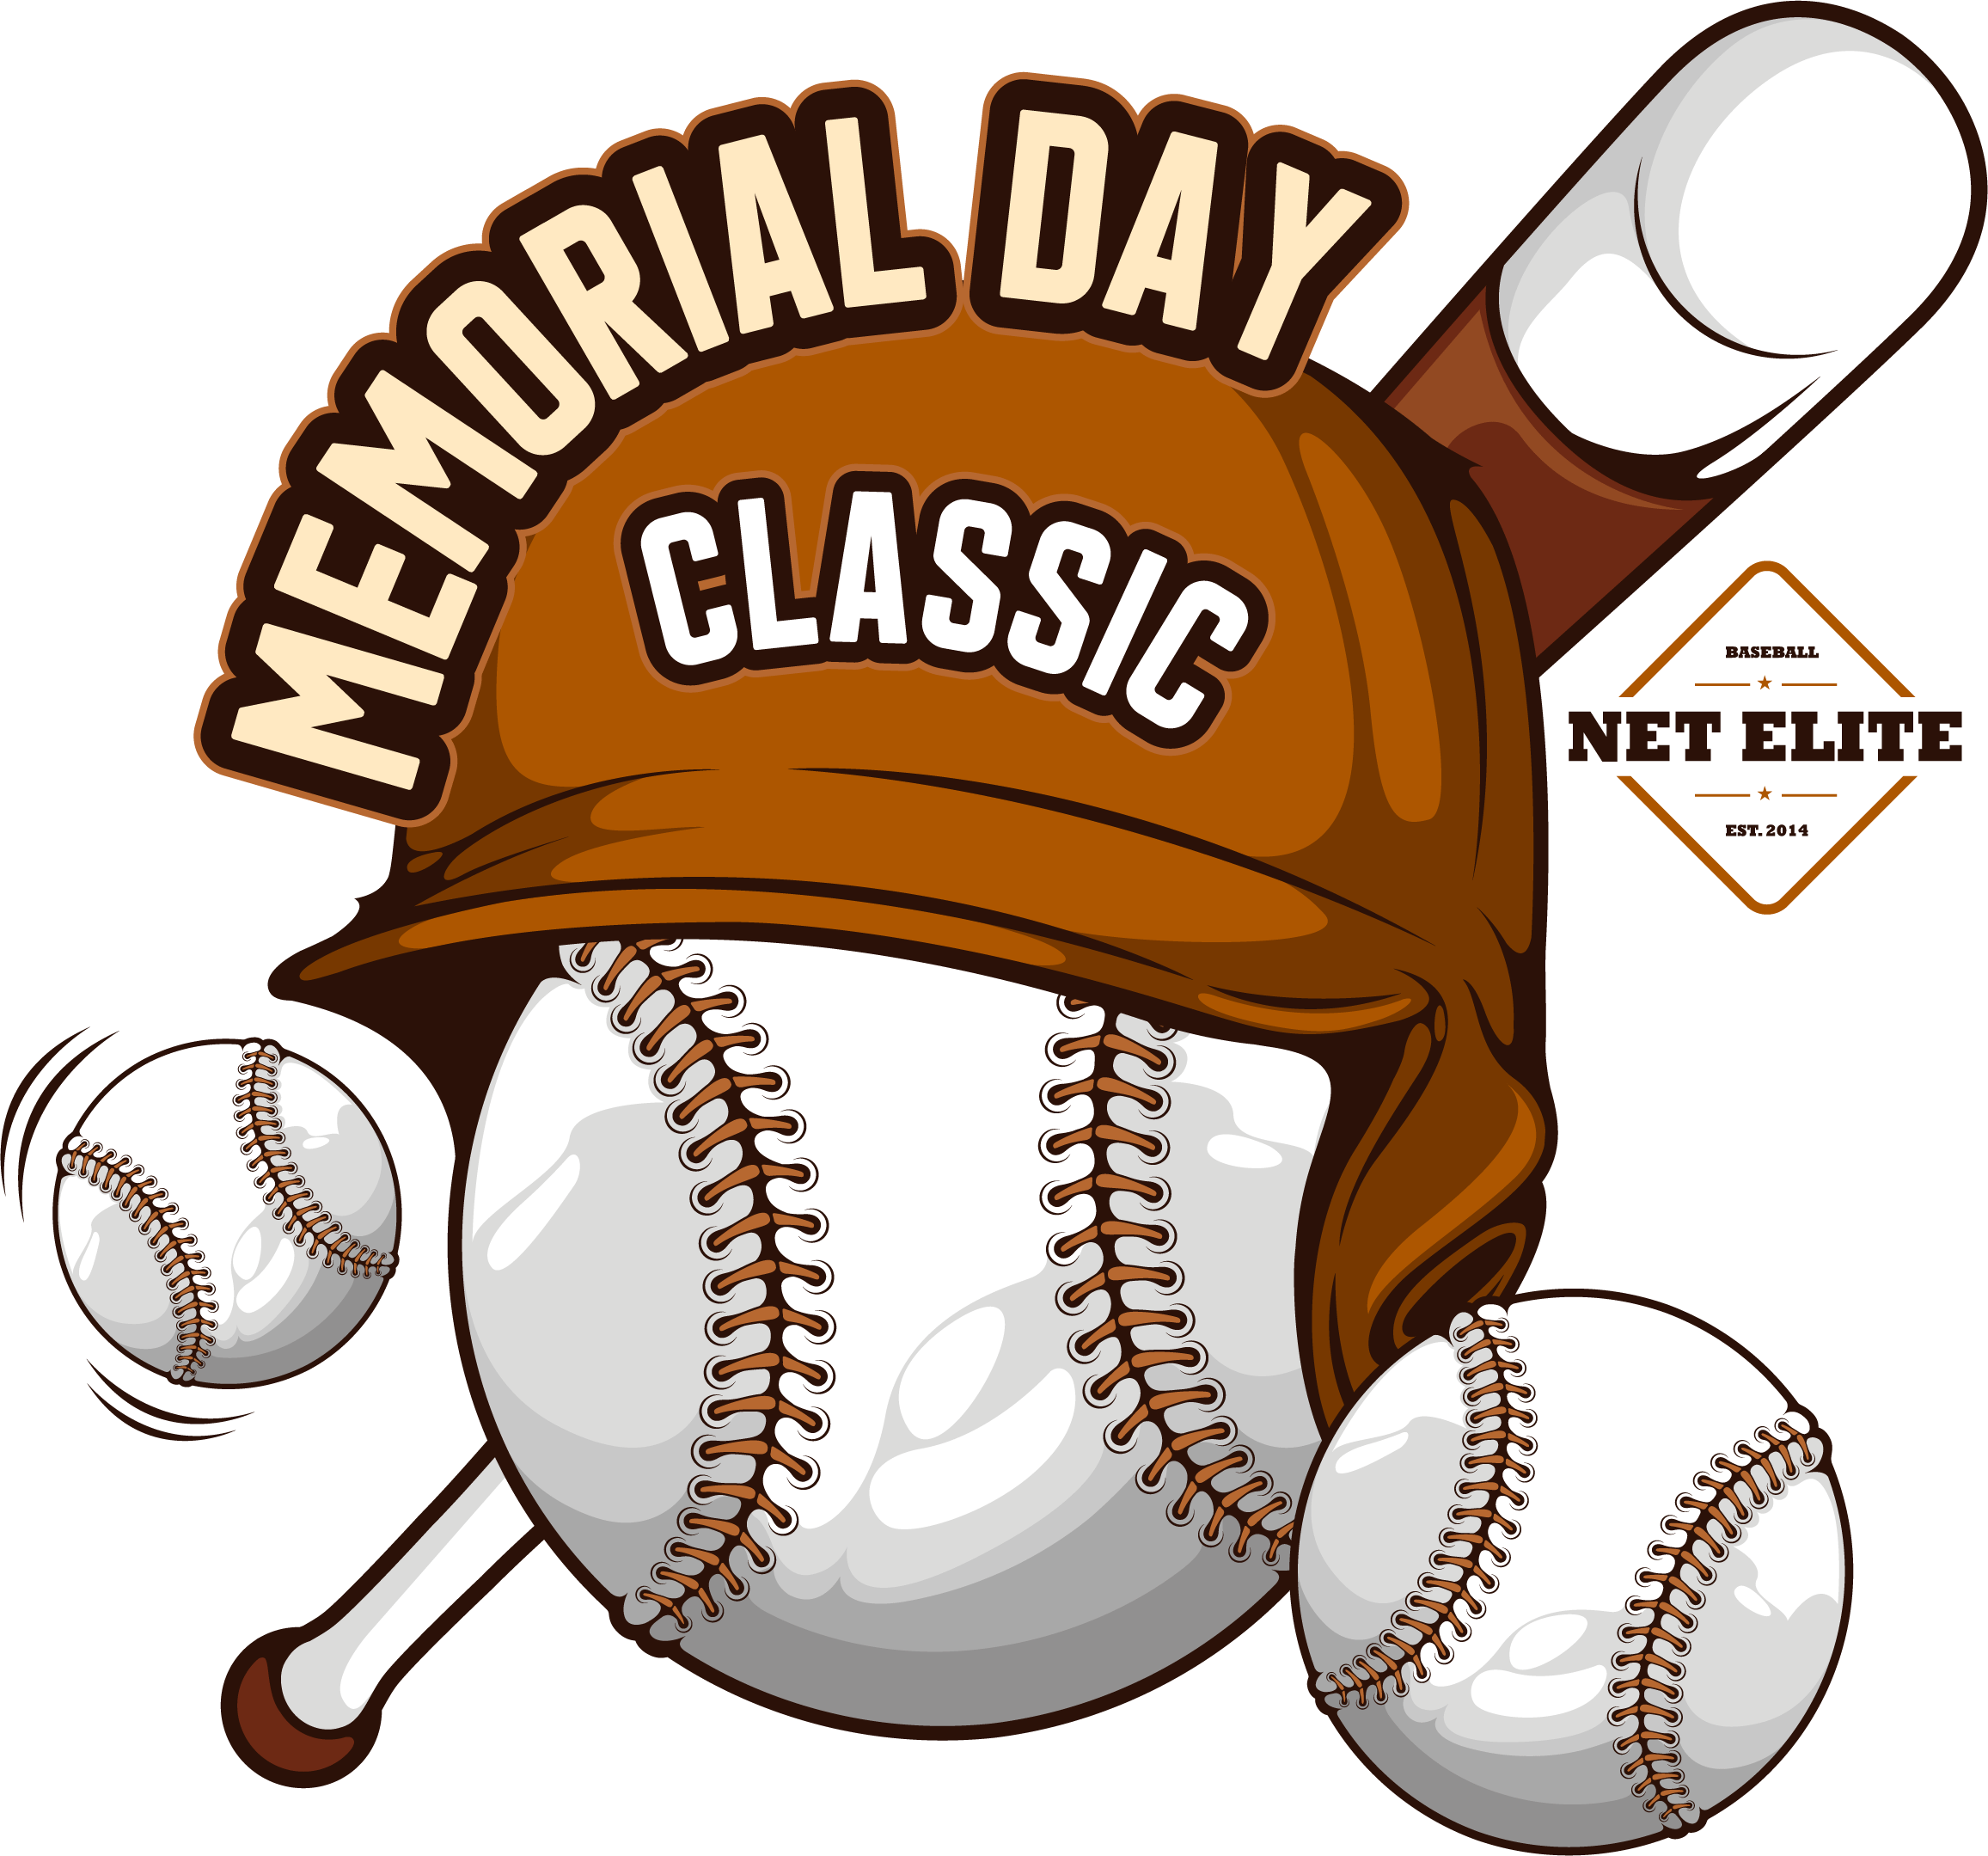 Memorial Day Classic - Net Elite Baseball